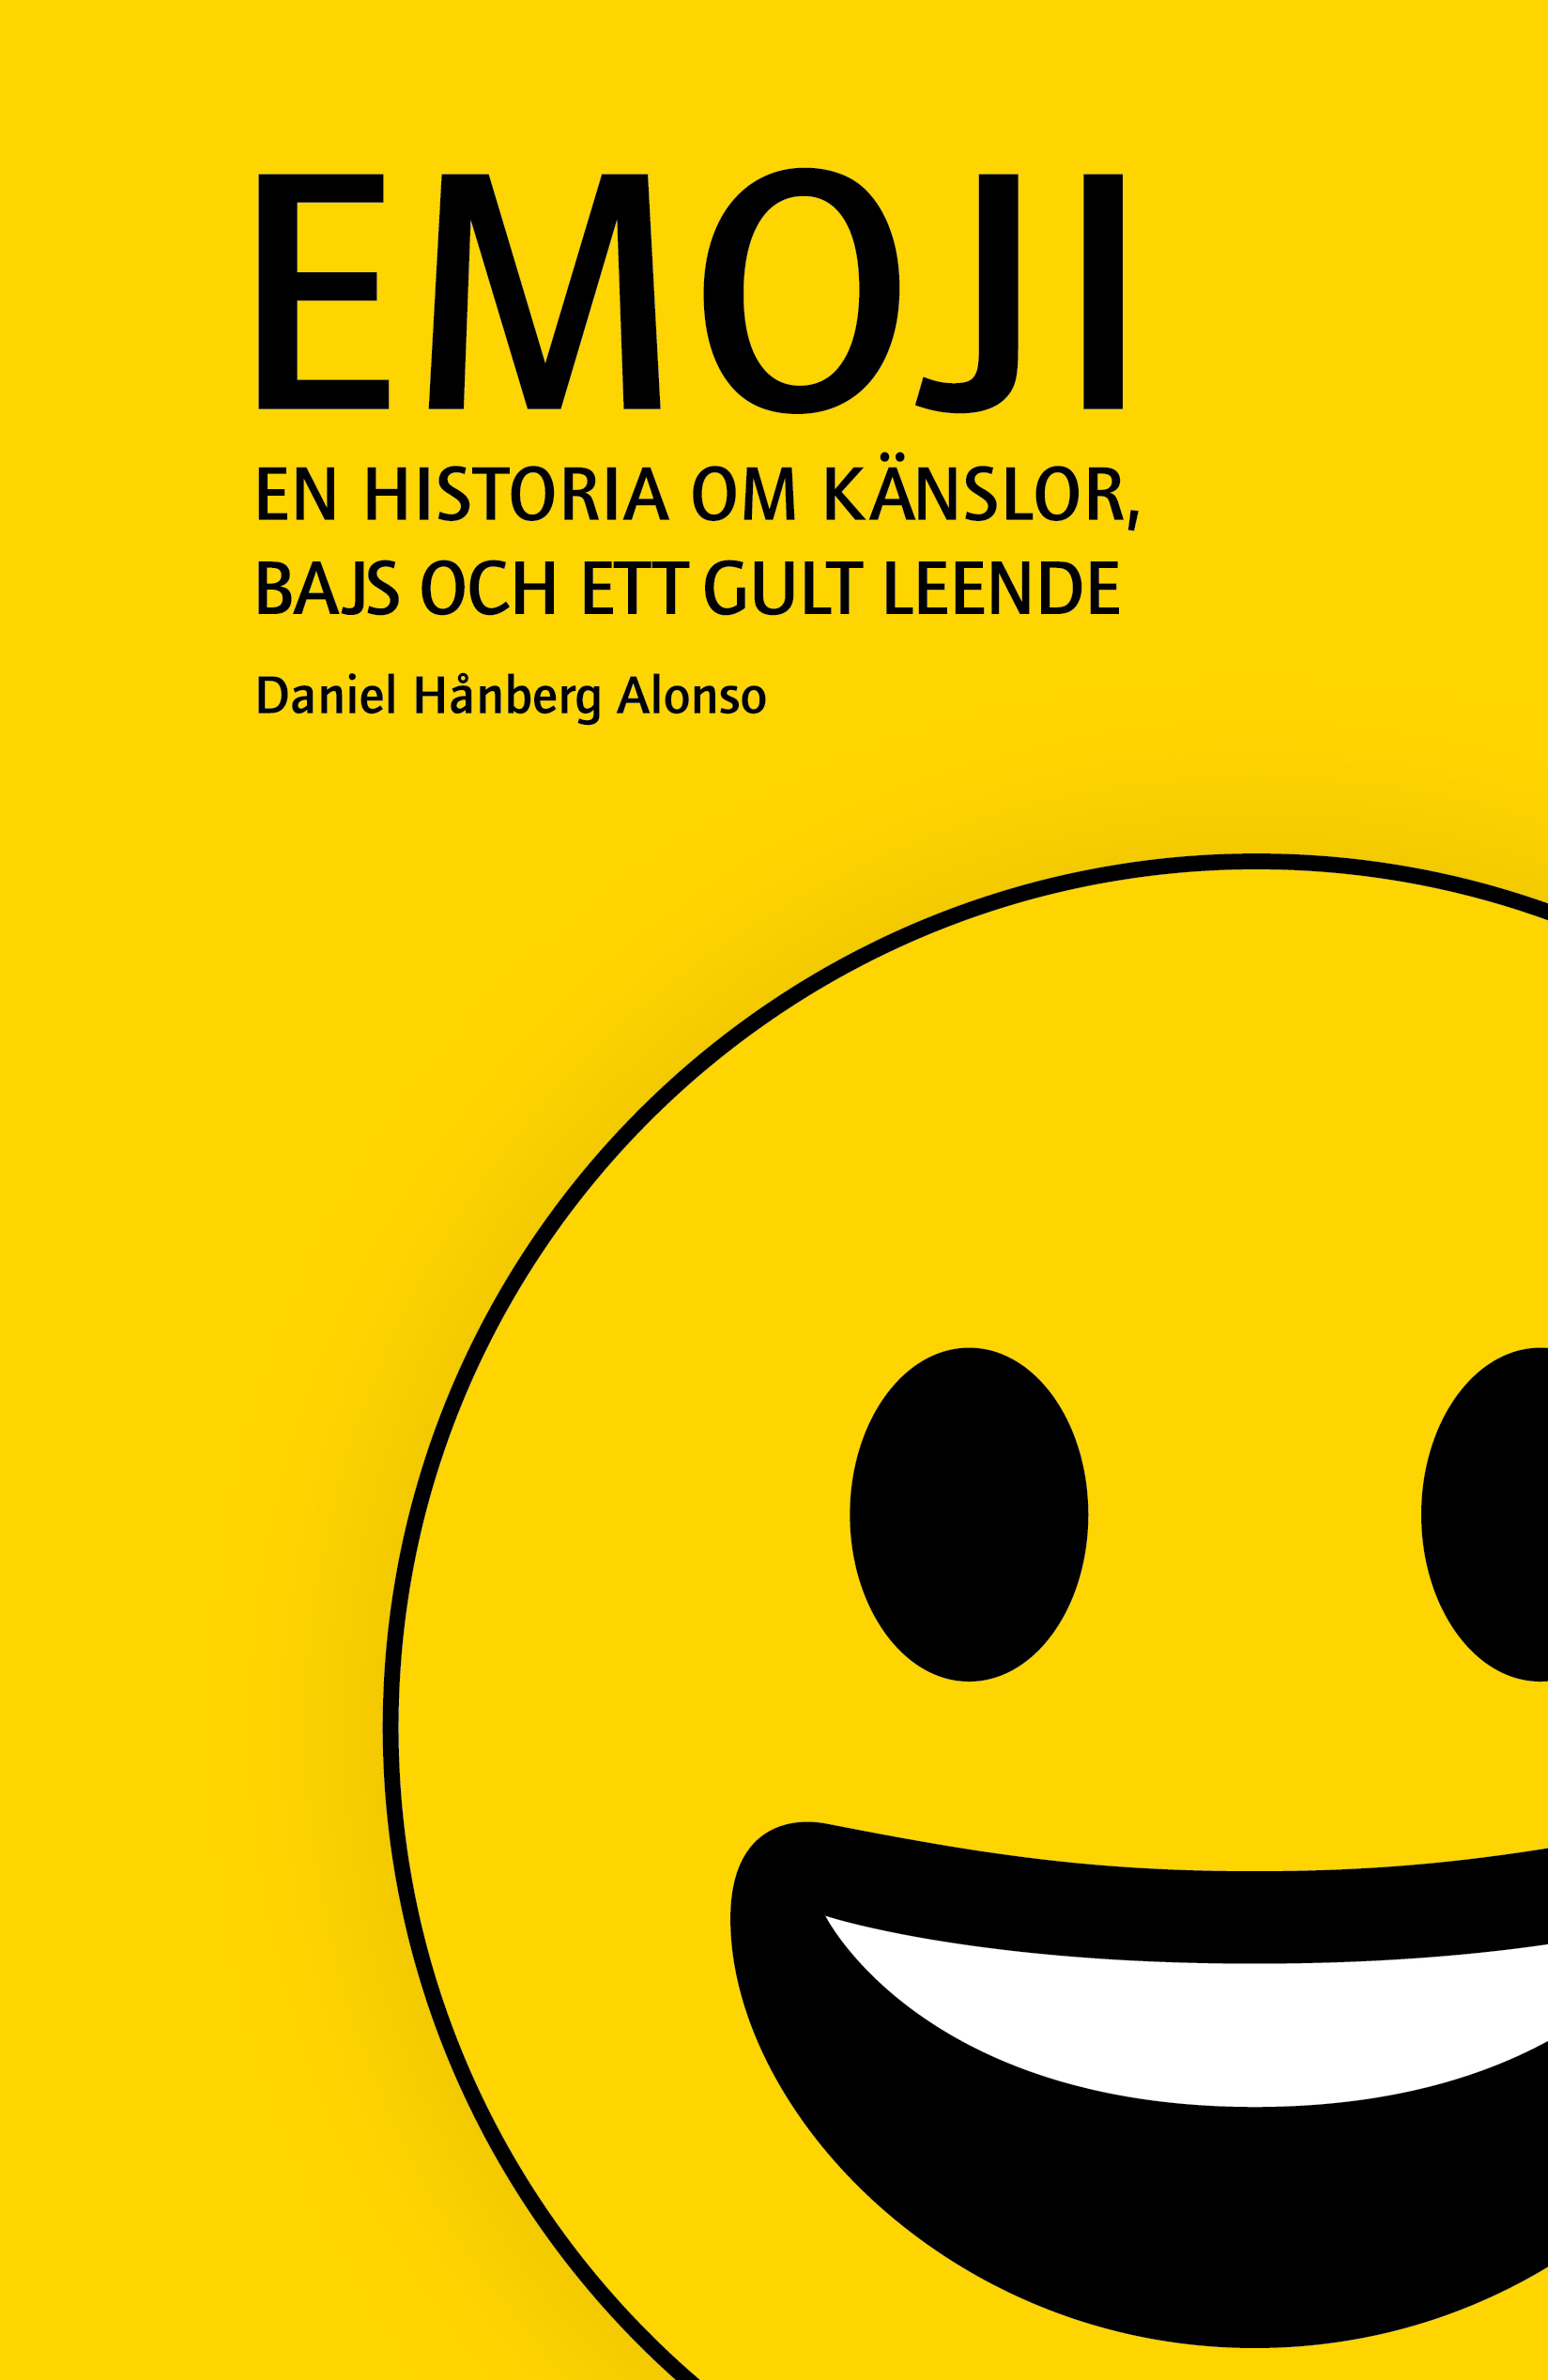 Omslaget på boken Emoji.